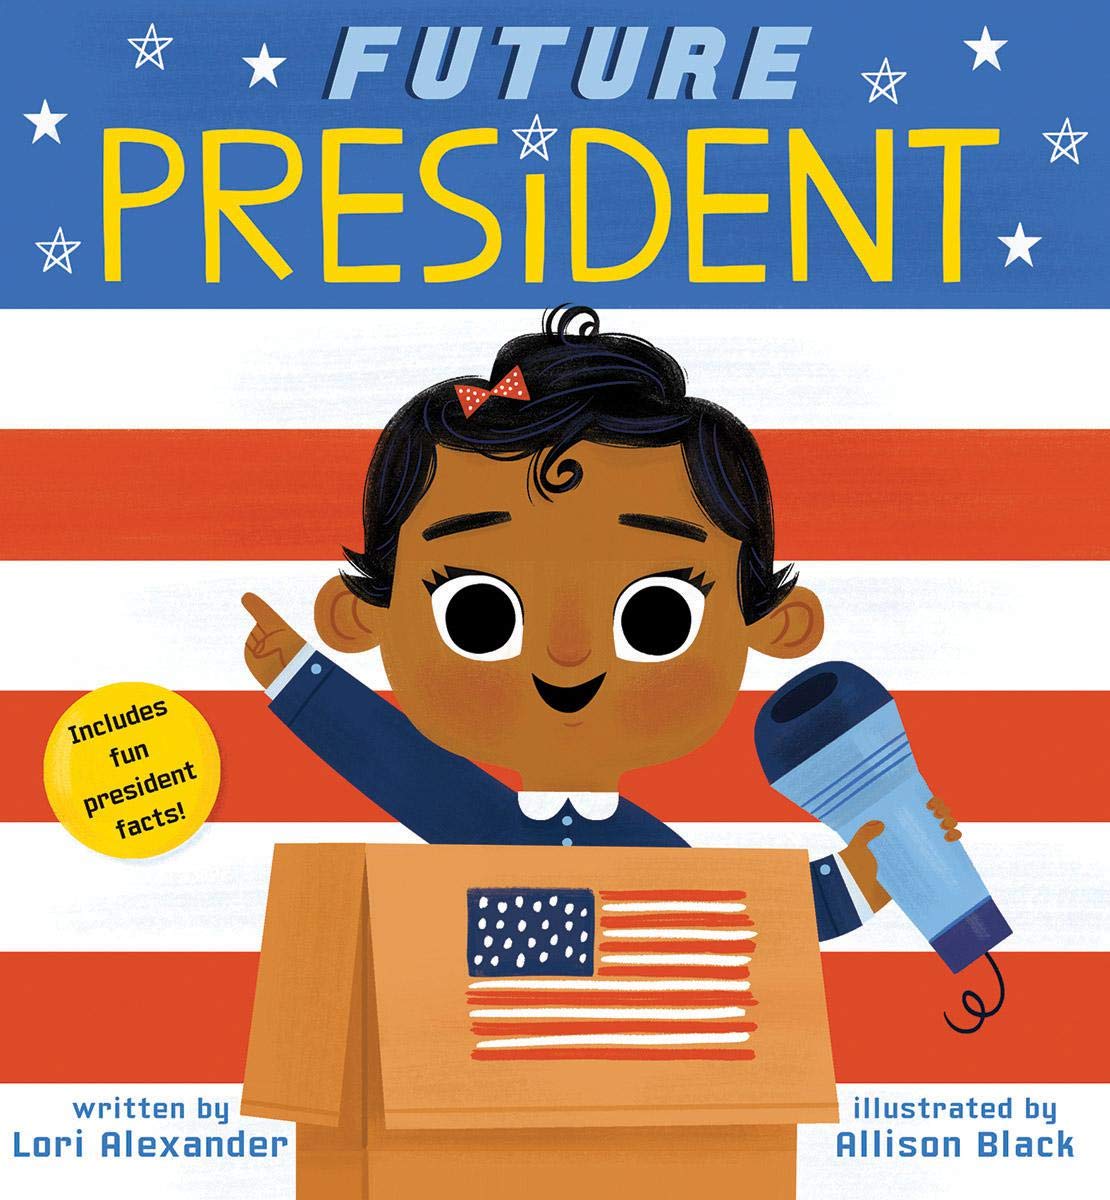 "Future President" book cover